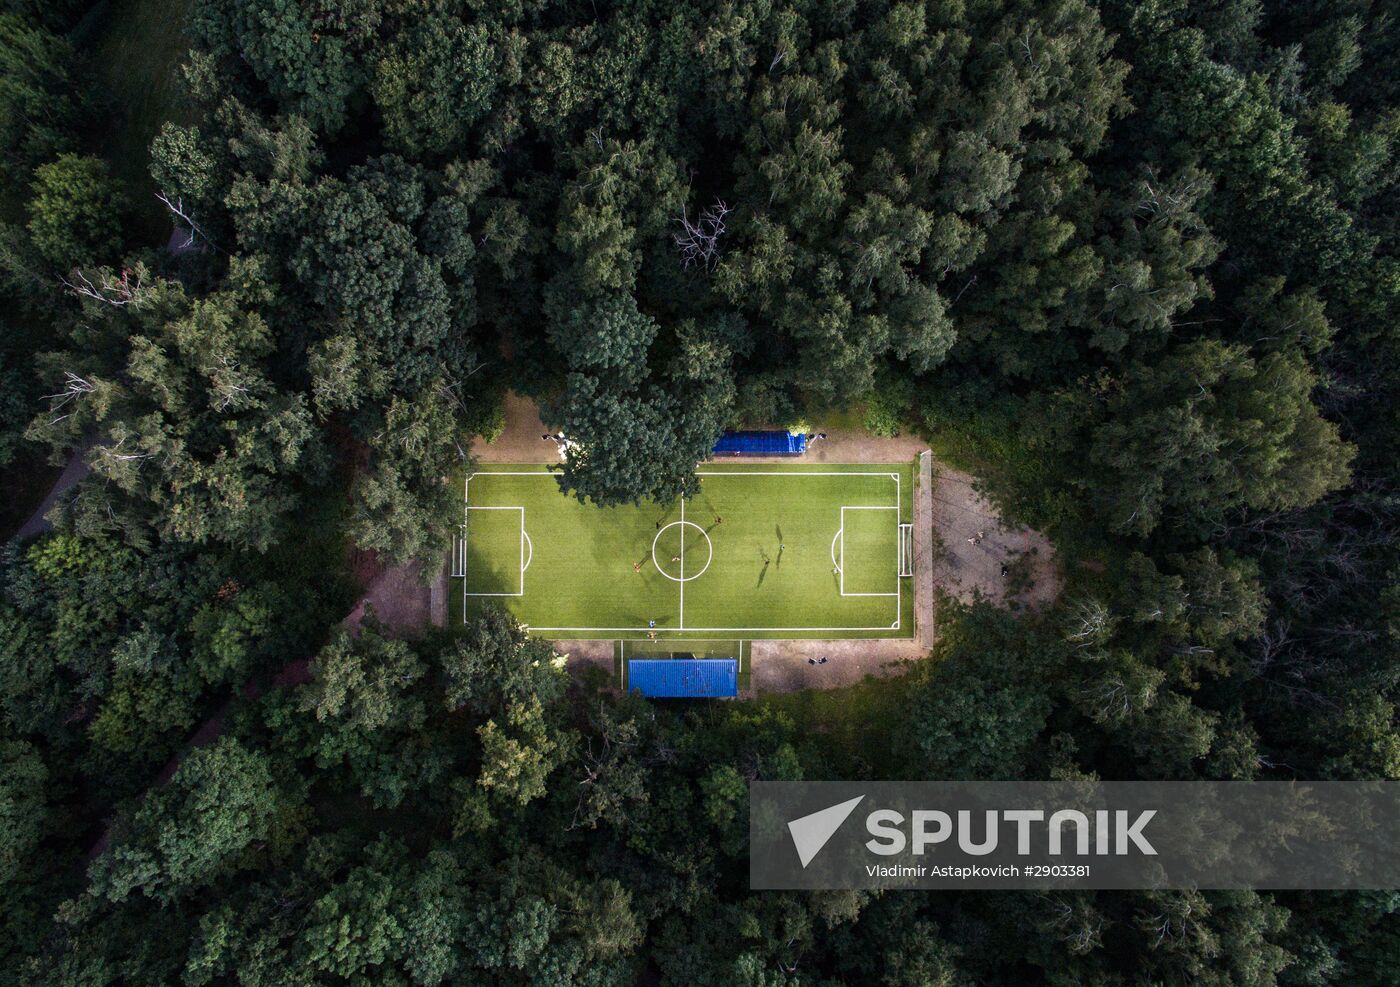 Sportsground in Neskuchny Garden